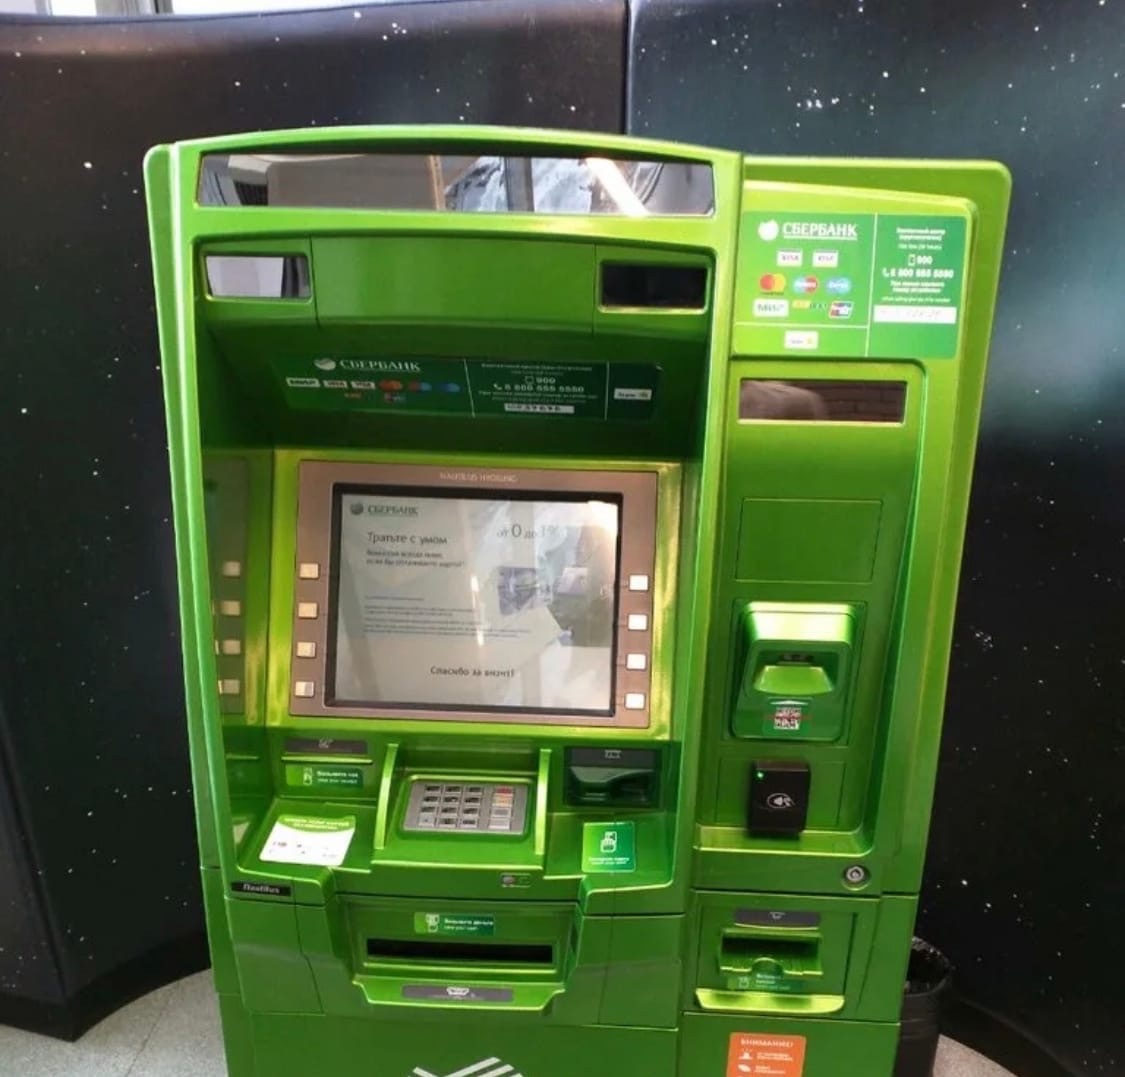 фото нерабочего банкомата сбербанка